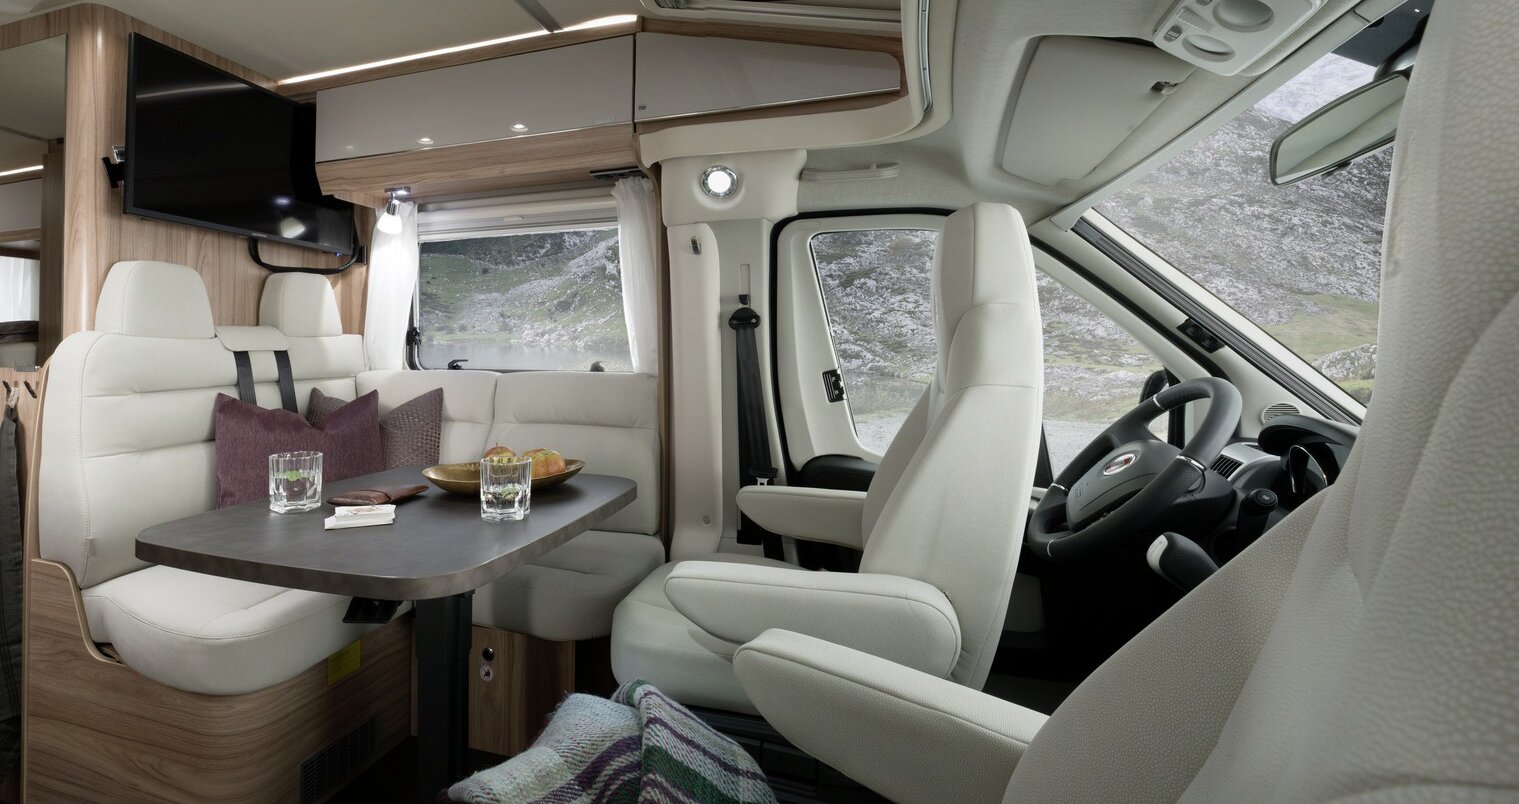 Dinette incl. sedili cabina guida con tappezzeria chiara, tavolo apparecchiato, pensili e TV-Plasma nell’HYMER Exsis-t